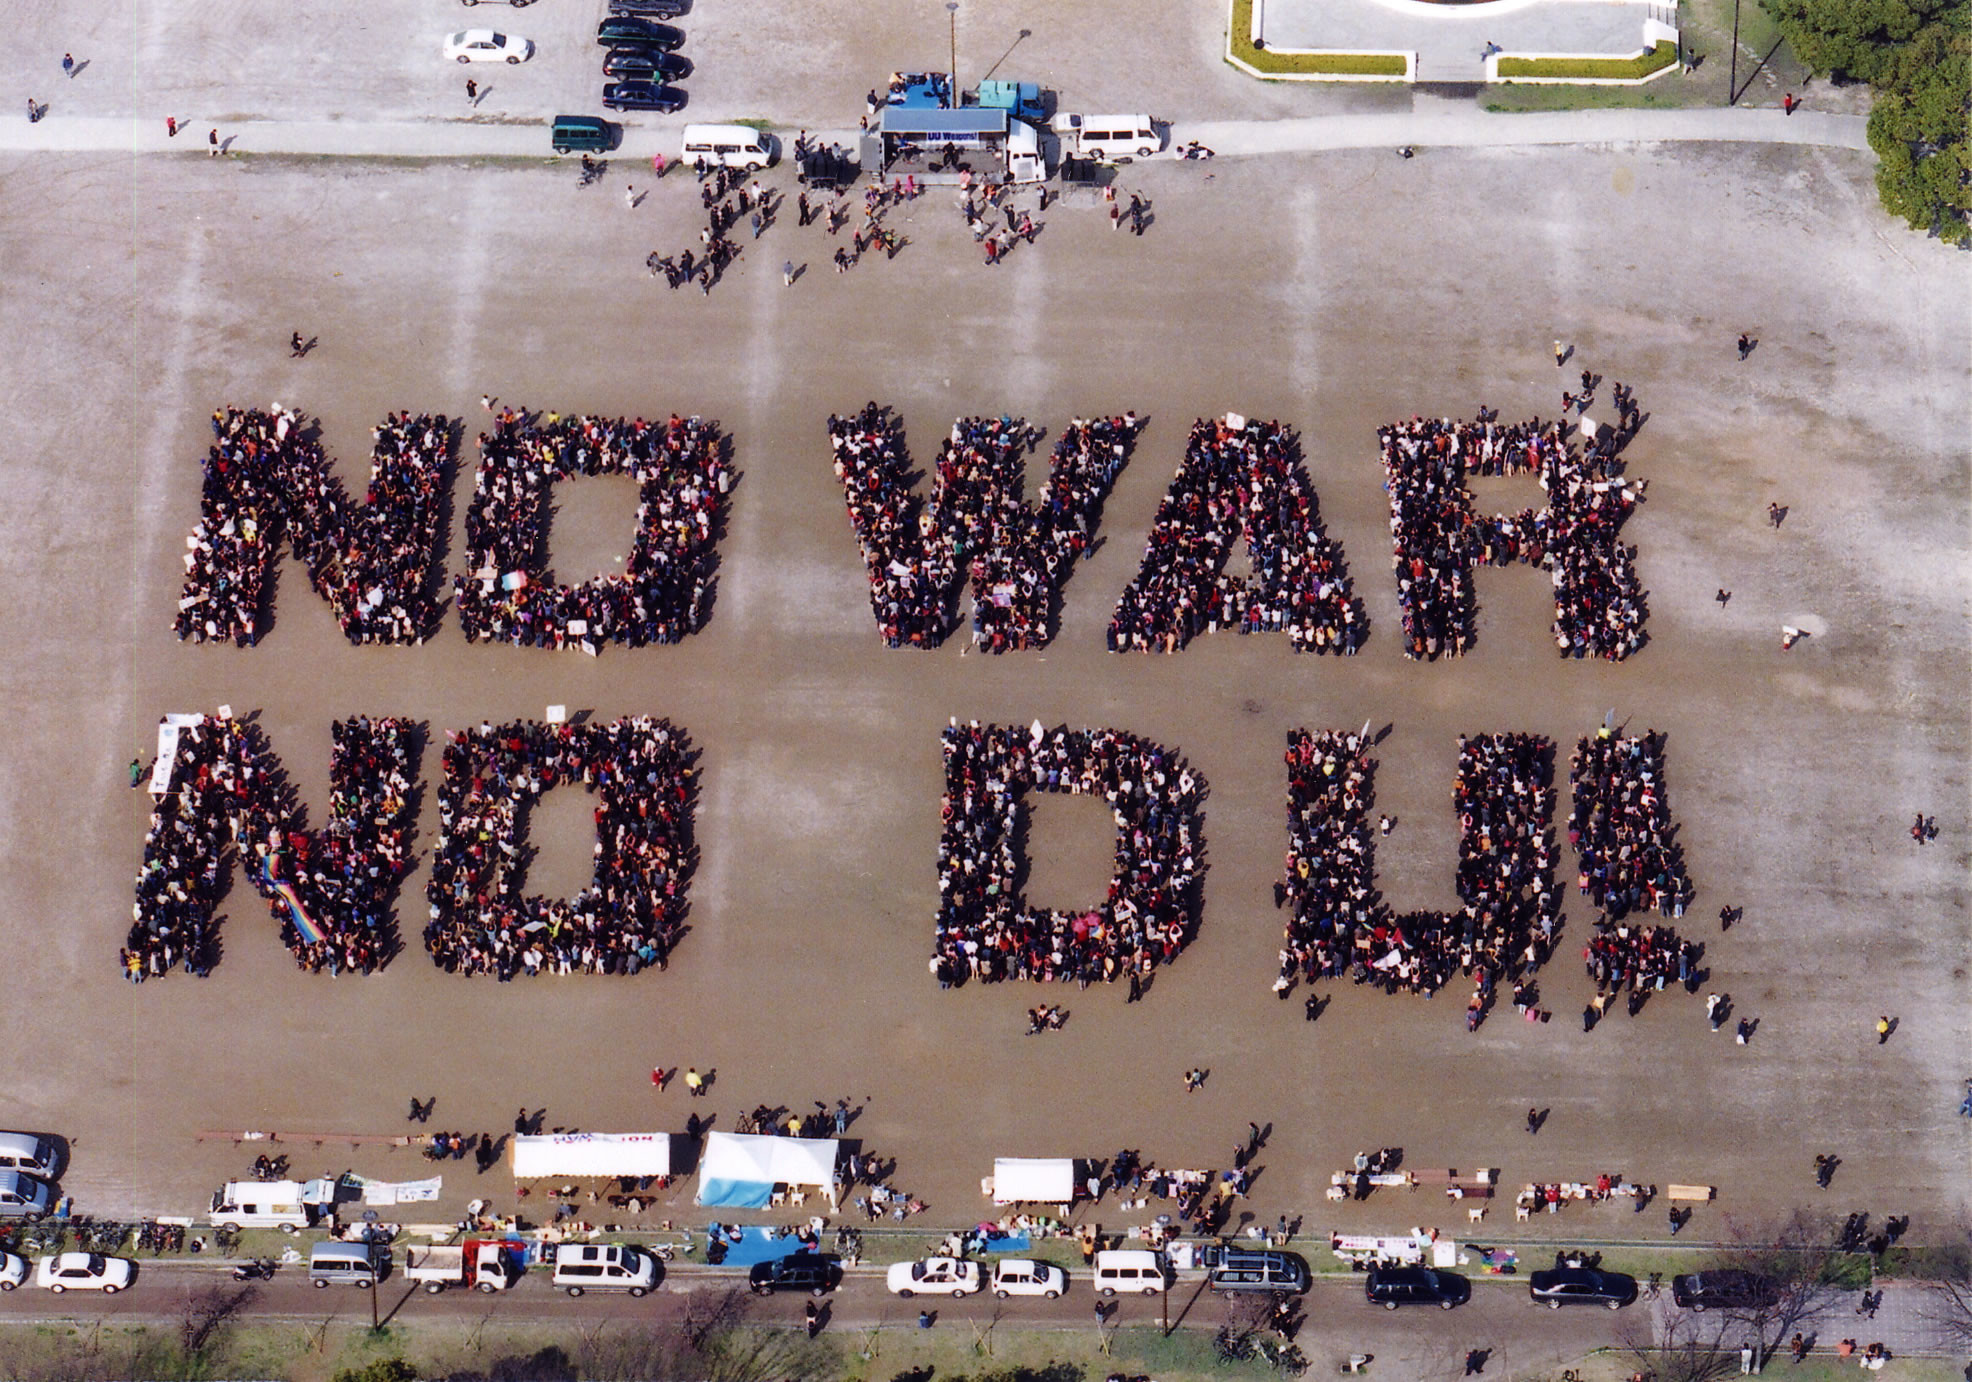 La fotografia aerea scattata da Toyoda Naomi per dire no alla guerra e all'uso dell'uranio impoverito (DU). Pubblicata anche dal New York Times. 